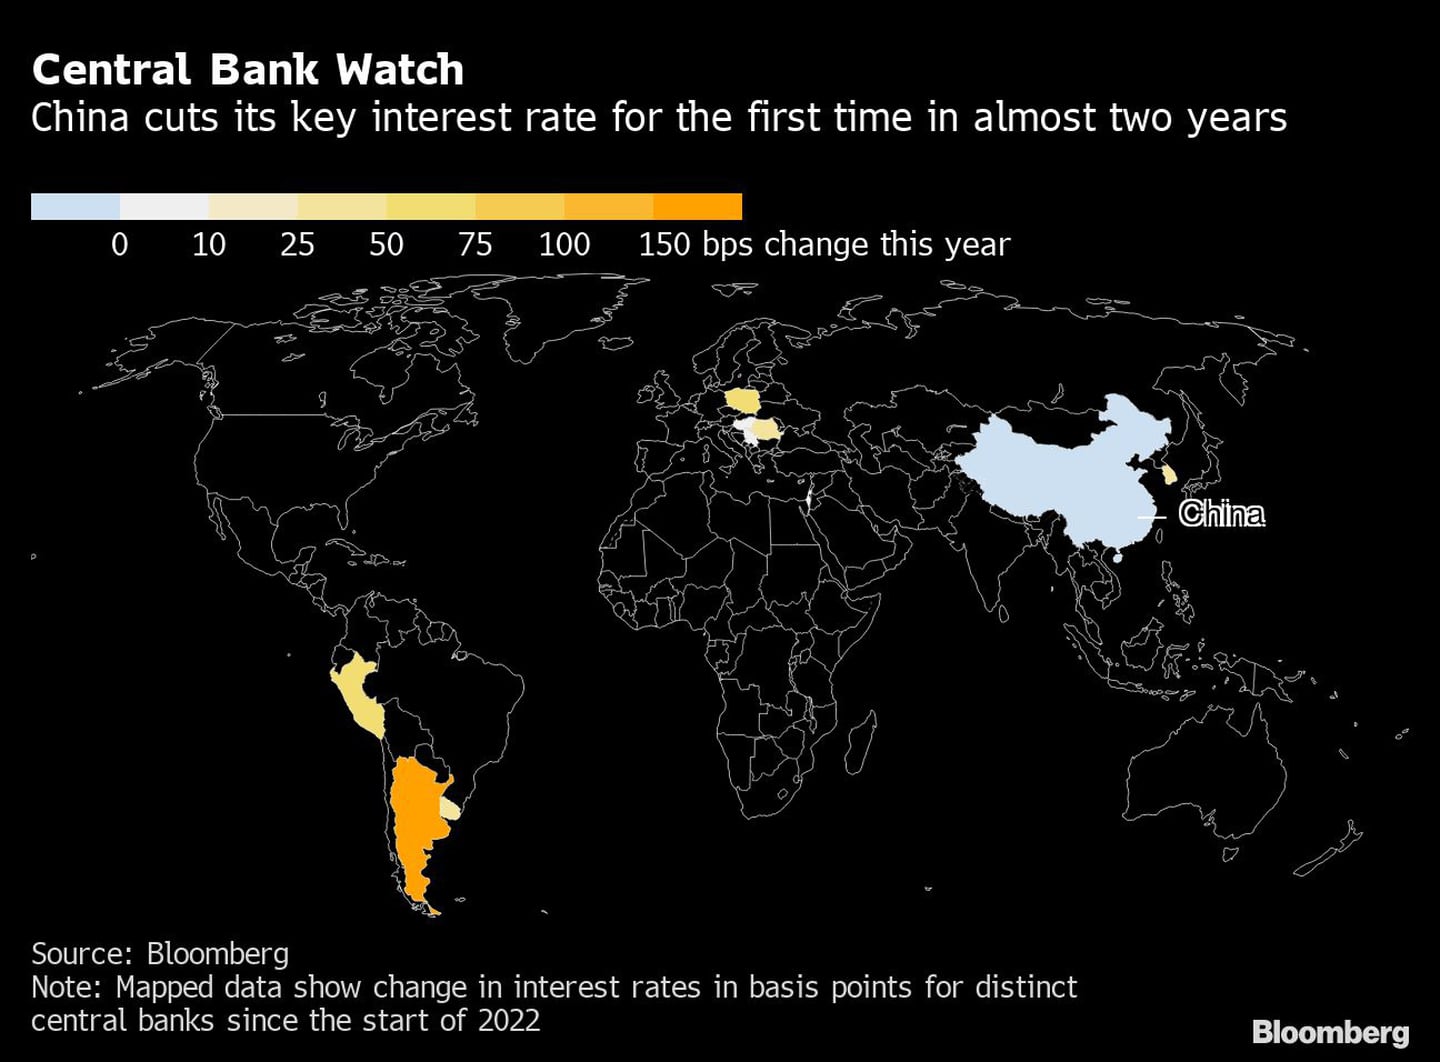 Vigilancia de los bancos centrales
China recorta su principal tasa de interés por primera vez en casi dos años
Barra: cambio de puntos básicos este añodfd